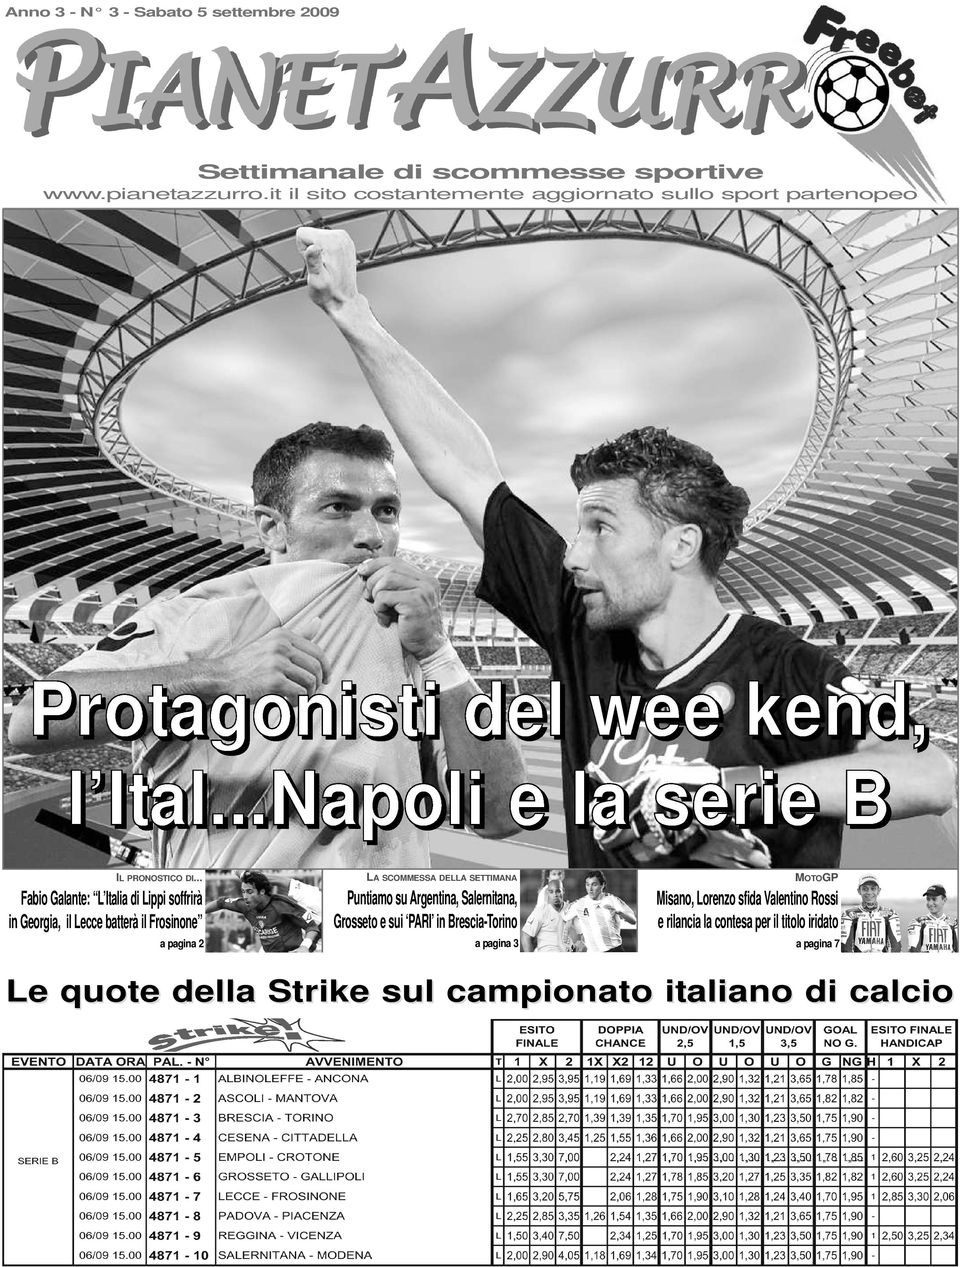 .. Fabio Galante: L Italia di Lippi soffrirà in Georgia, il Lecce batterà il Frosinone a pagina 2 LA SCOMMESSA DELLA SETTIMANA Puntiamo su